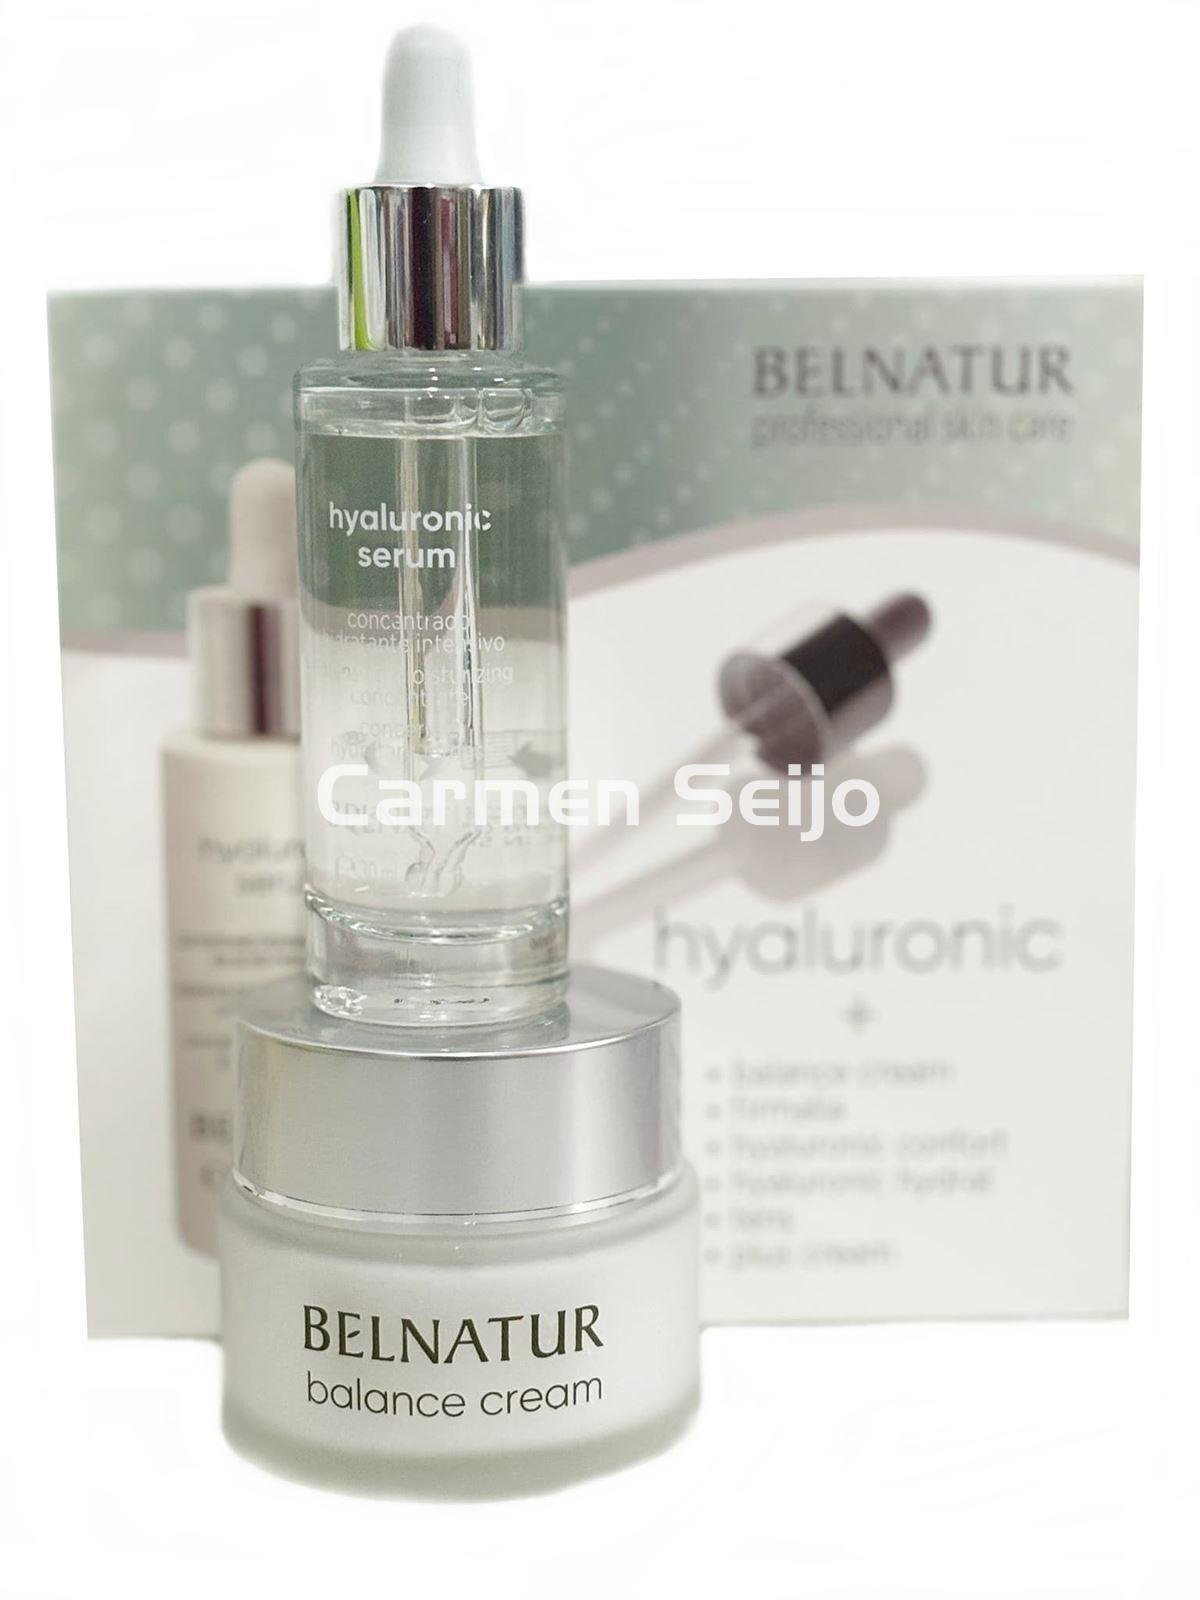 Belnatur Pack Crema Equilibrante Balance Cream & Sérum Hyaluronic - Imagen 1